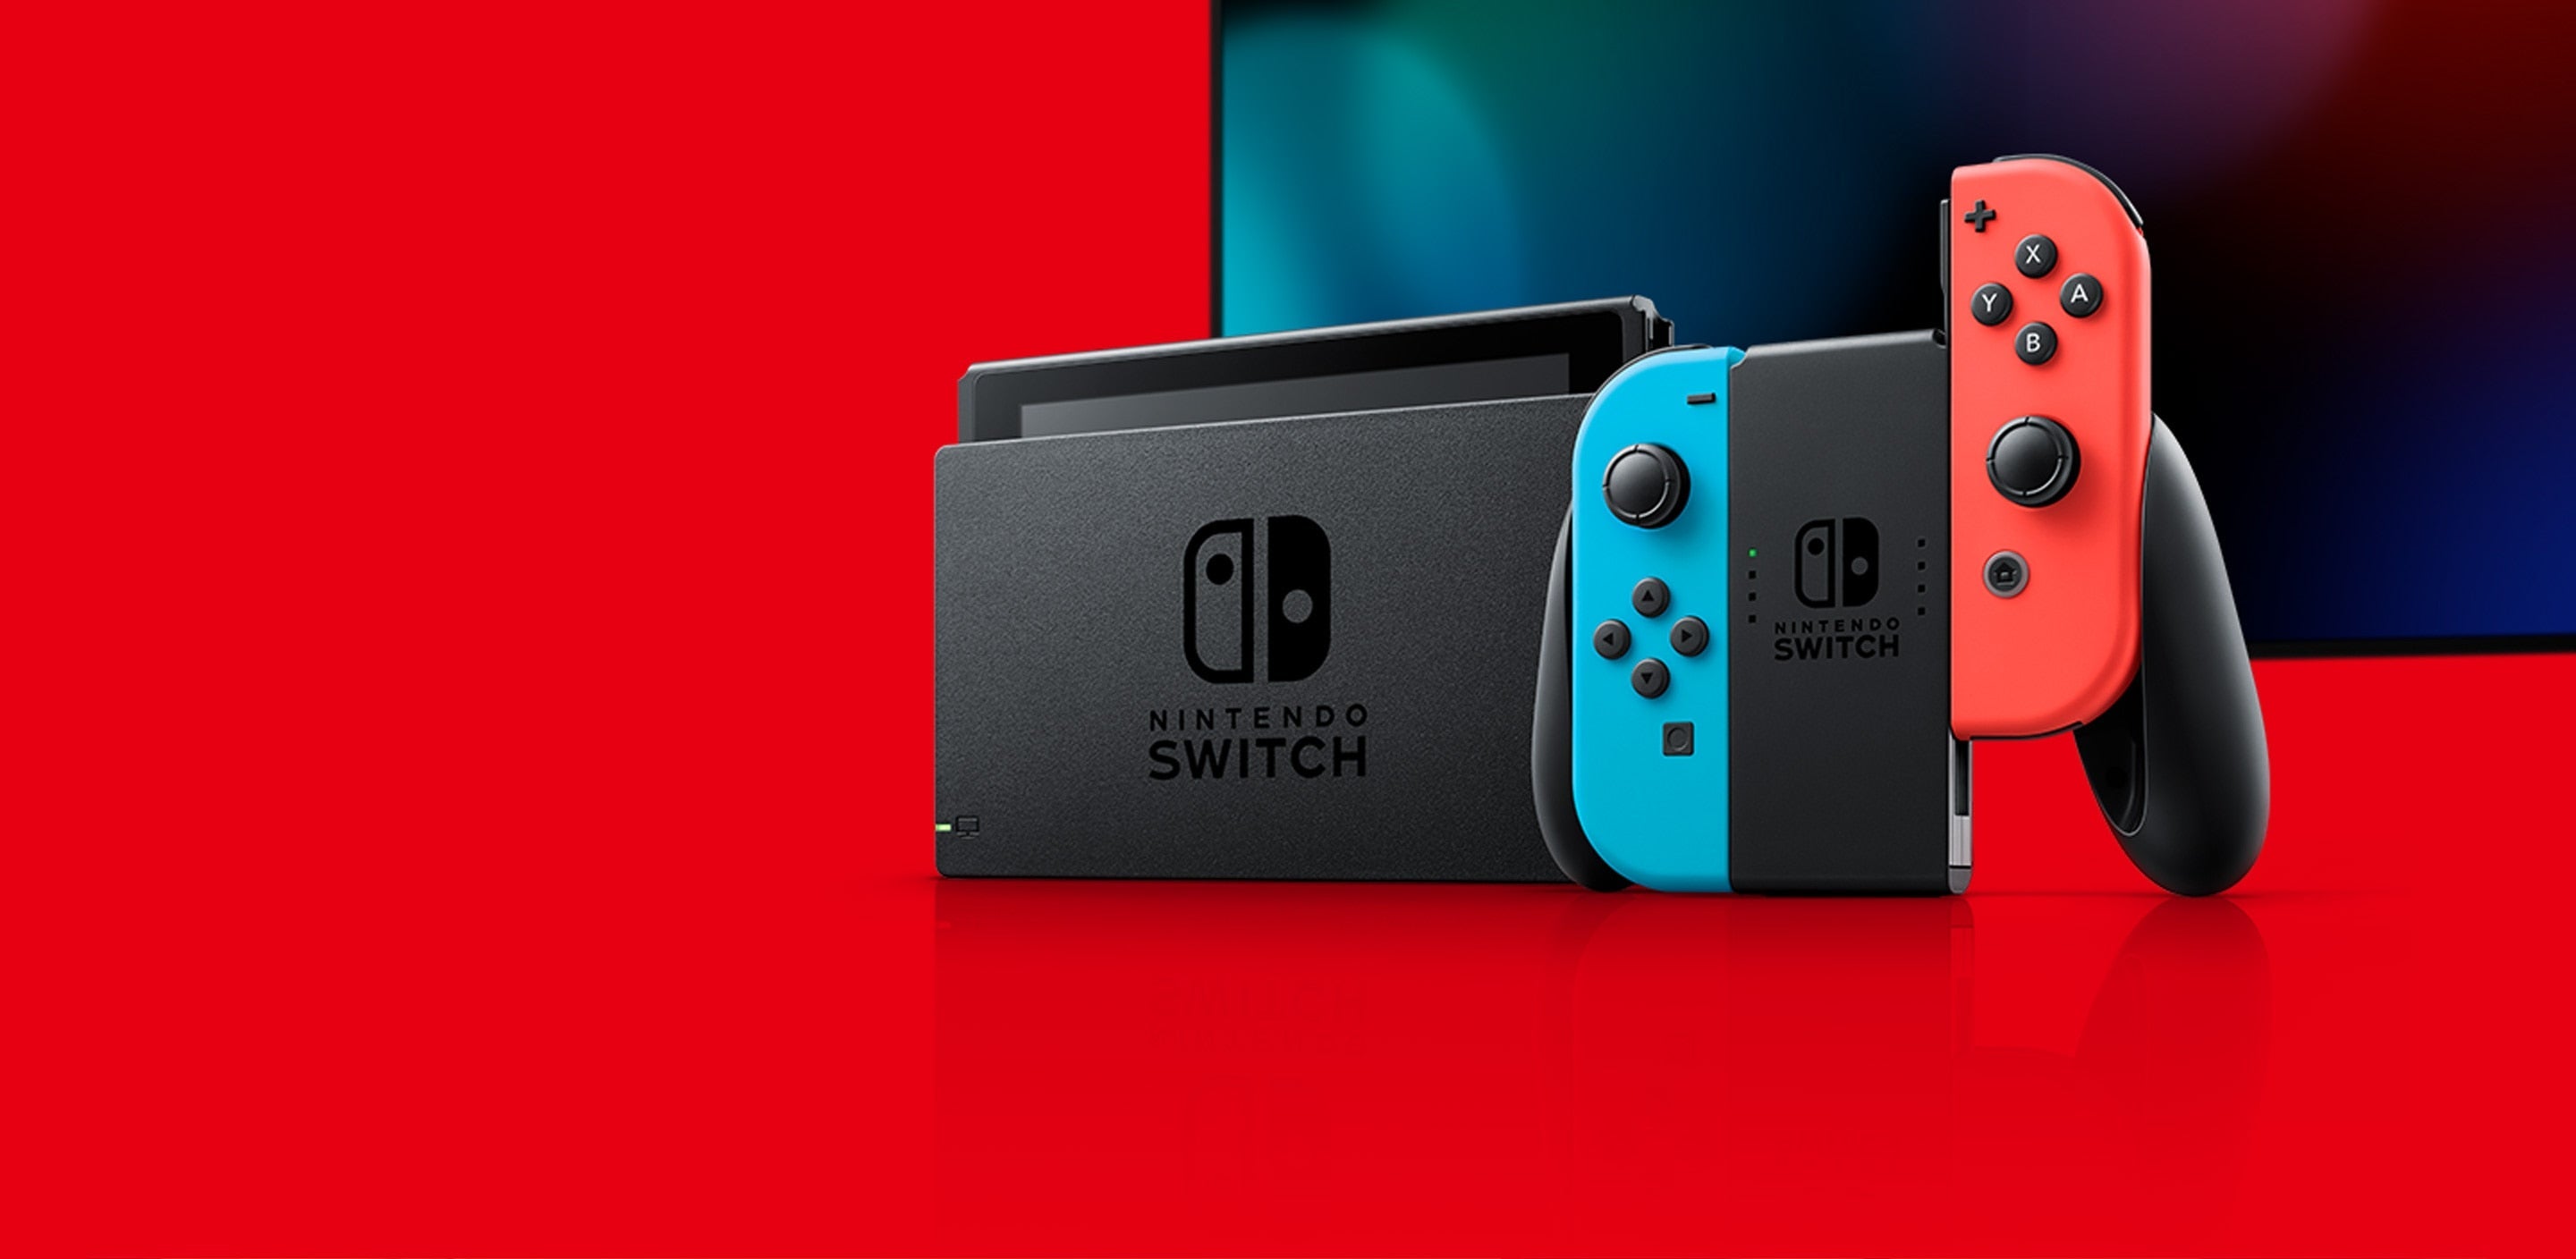 任天堂 - Switch OLED 加強版主機 任天堂 Nintendo 遊戲主機 白色/紅藍色 香港行貨